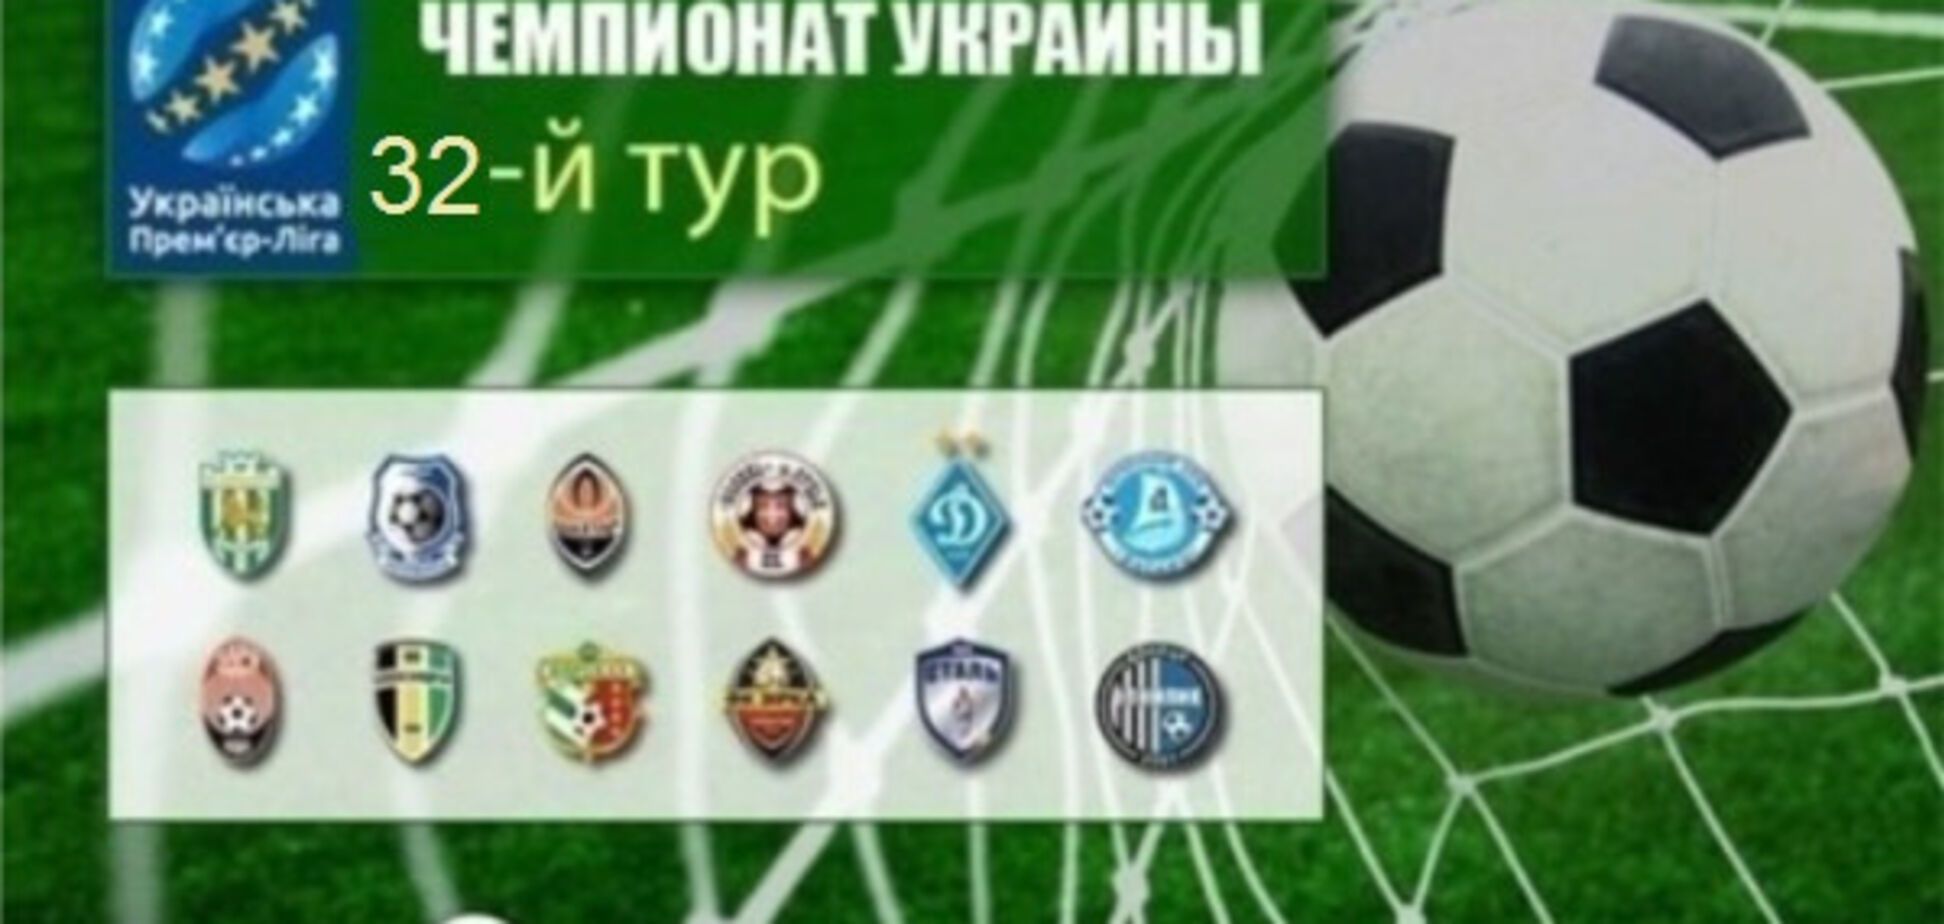 Заключительный тур чемпионата Украины по футболу: результаты и видеообзоры